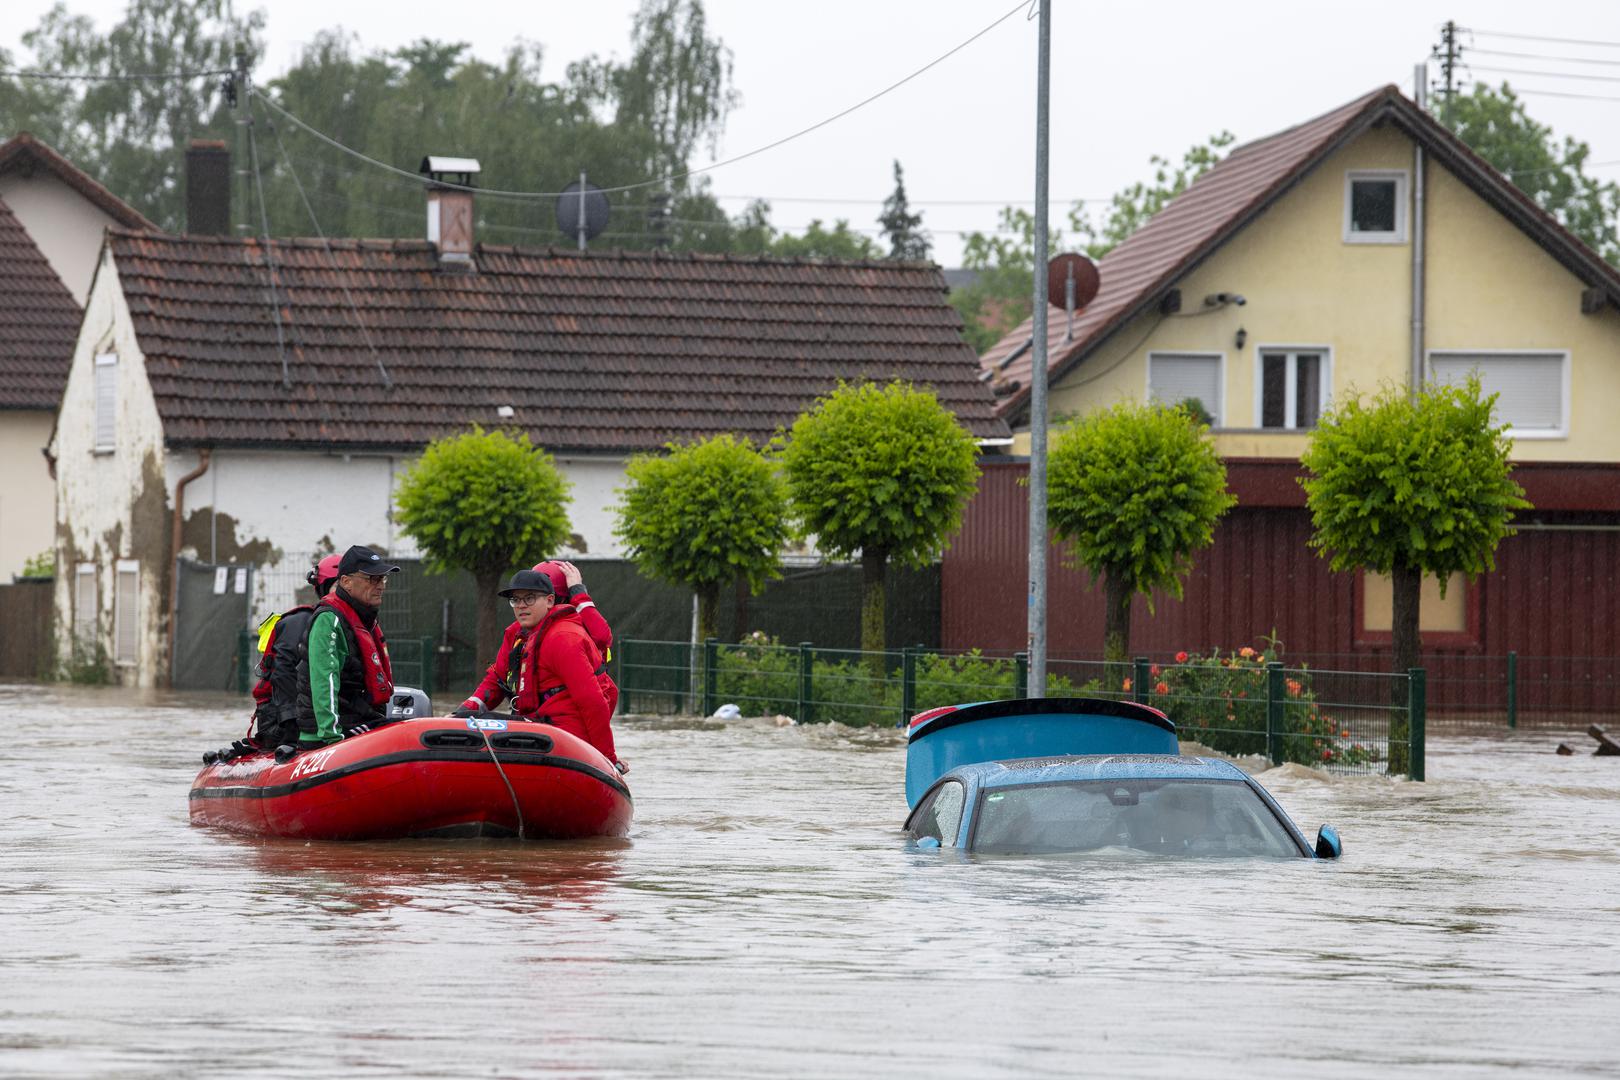 Zbog velikih poplava u Babenhausenu u Unterallgäuu su helikopterima evakuirali stanovnike. Bavarski Crveni križ spasio je dvoje ljudi s krova njihove kuće. Oni su se nalazili u životno opasnoj situaciji, rekao je glasnogovornik. Ostali stanovnici evakuirani su čamcima.